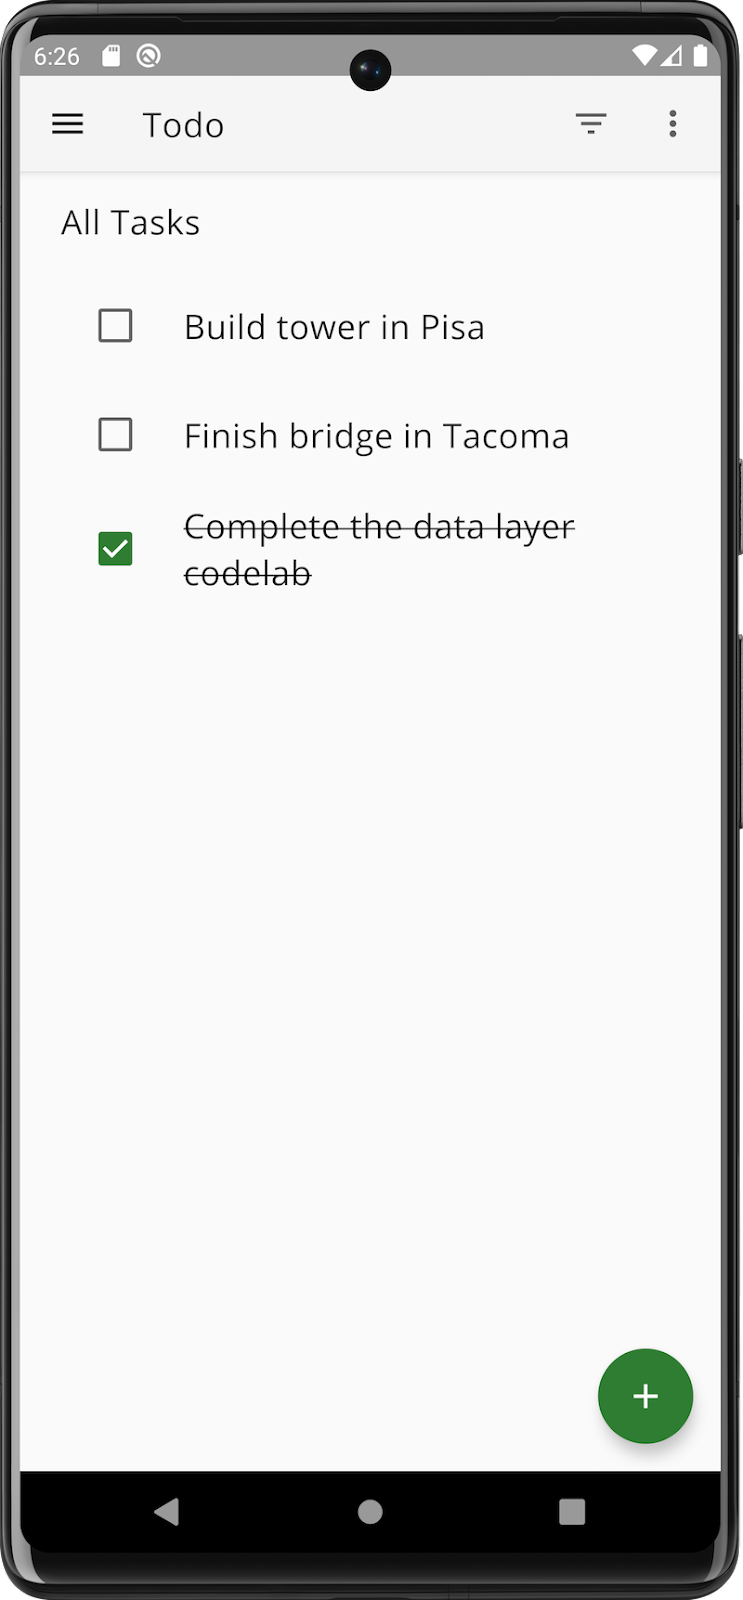 Tela de tarefas do app mostrando uma tarefa que foi concluída.